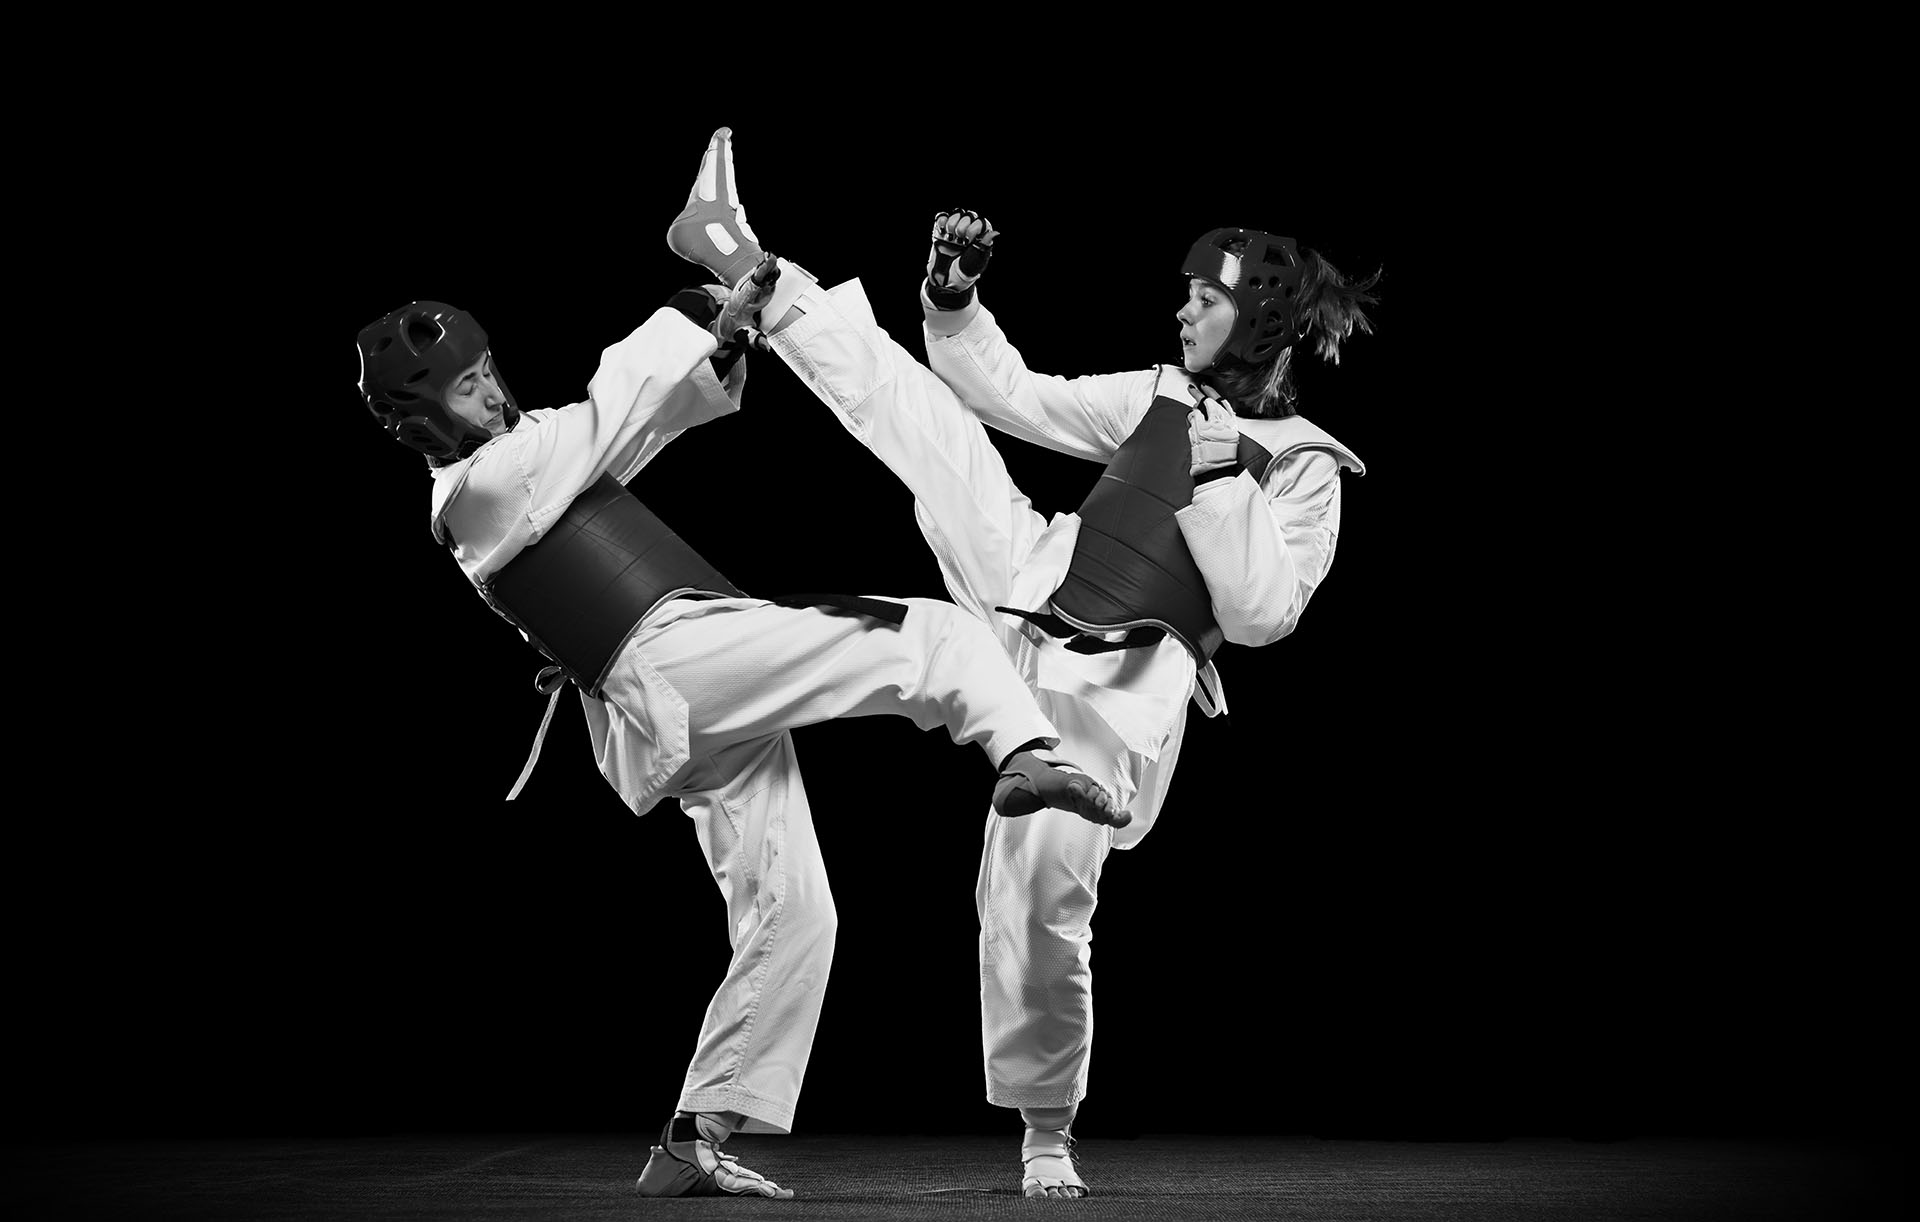 Full-length studio shot of two women, taekwondo athletes training isolated over black background